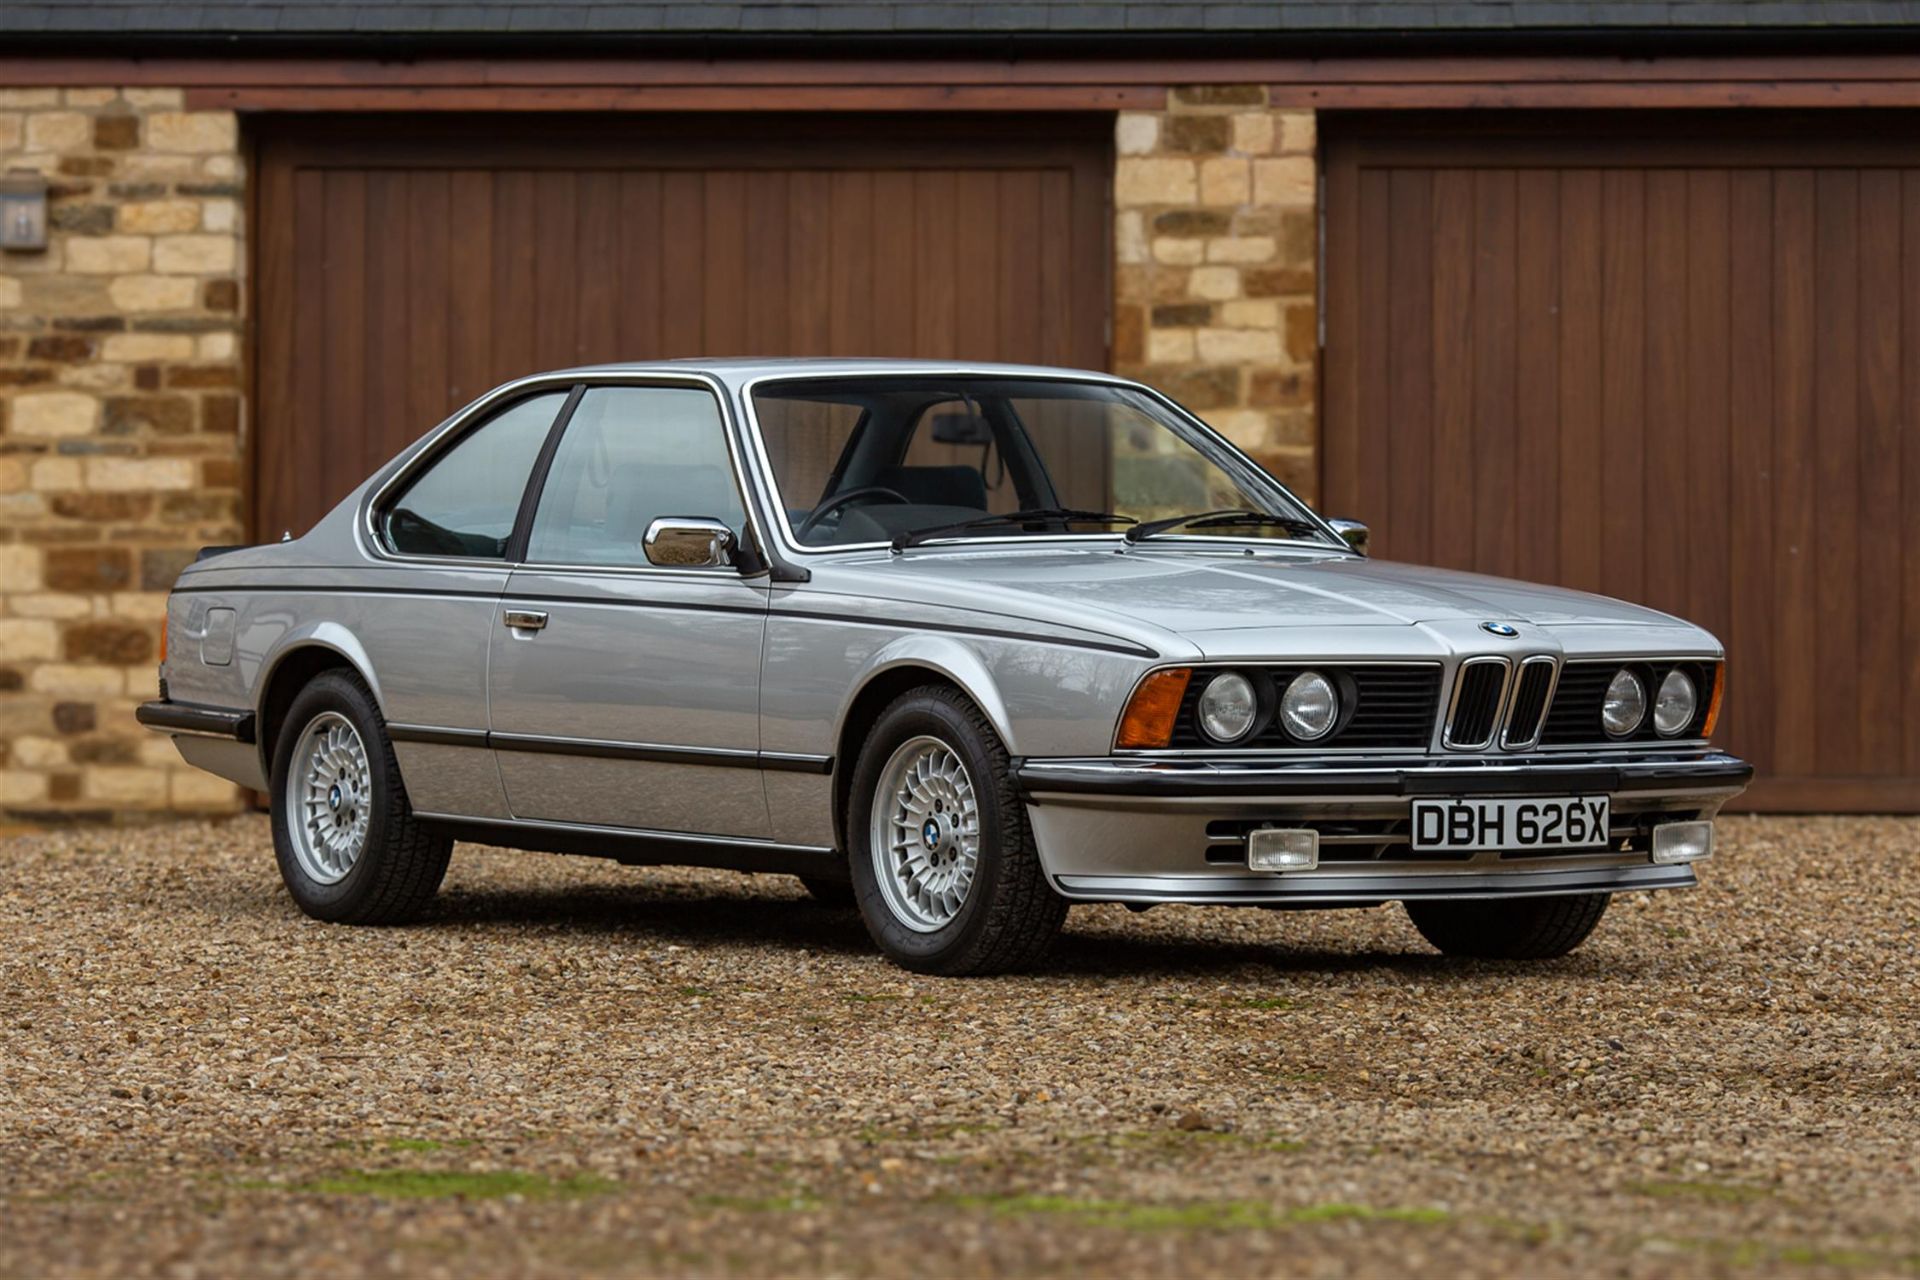 1982 BMW 635 CSi (E24) - 27,000 miles